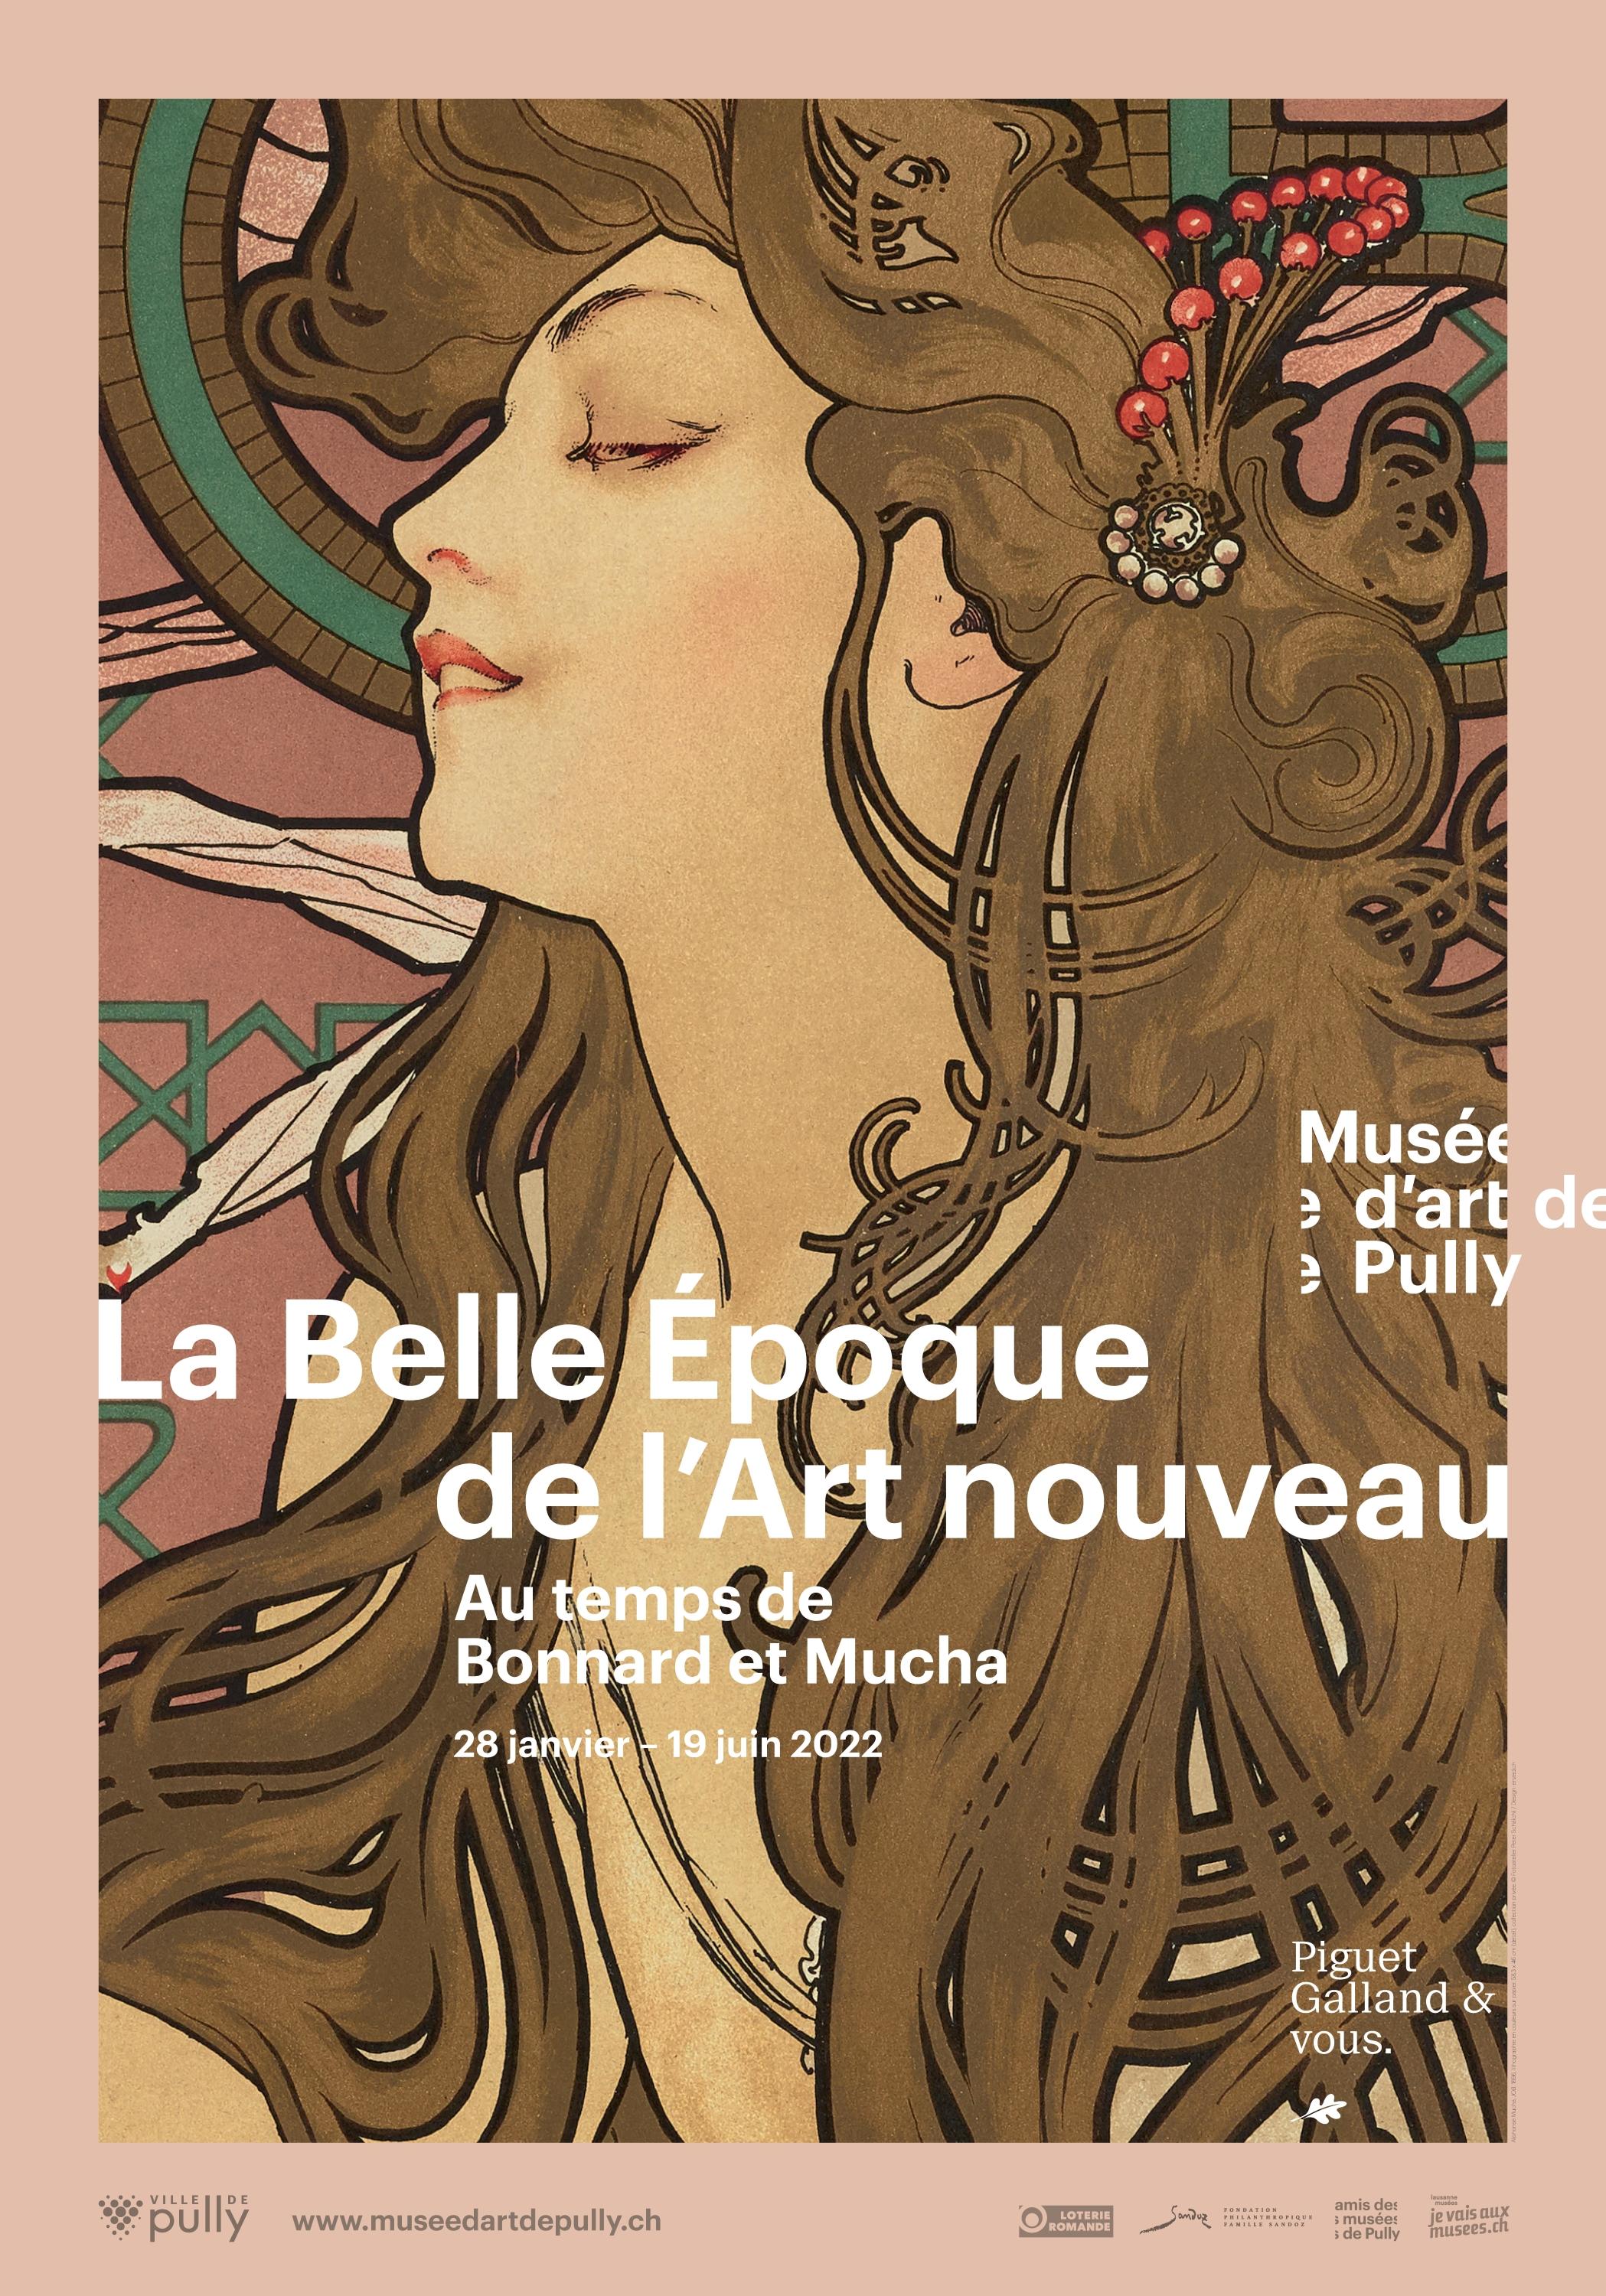 Affiche de l'exposition "La Belle Epoque de l'Art nouveau" au Musée d'art de Pully. [Musée d'art de Pully - Enzed]